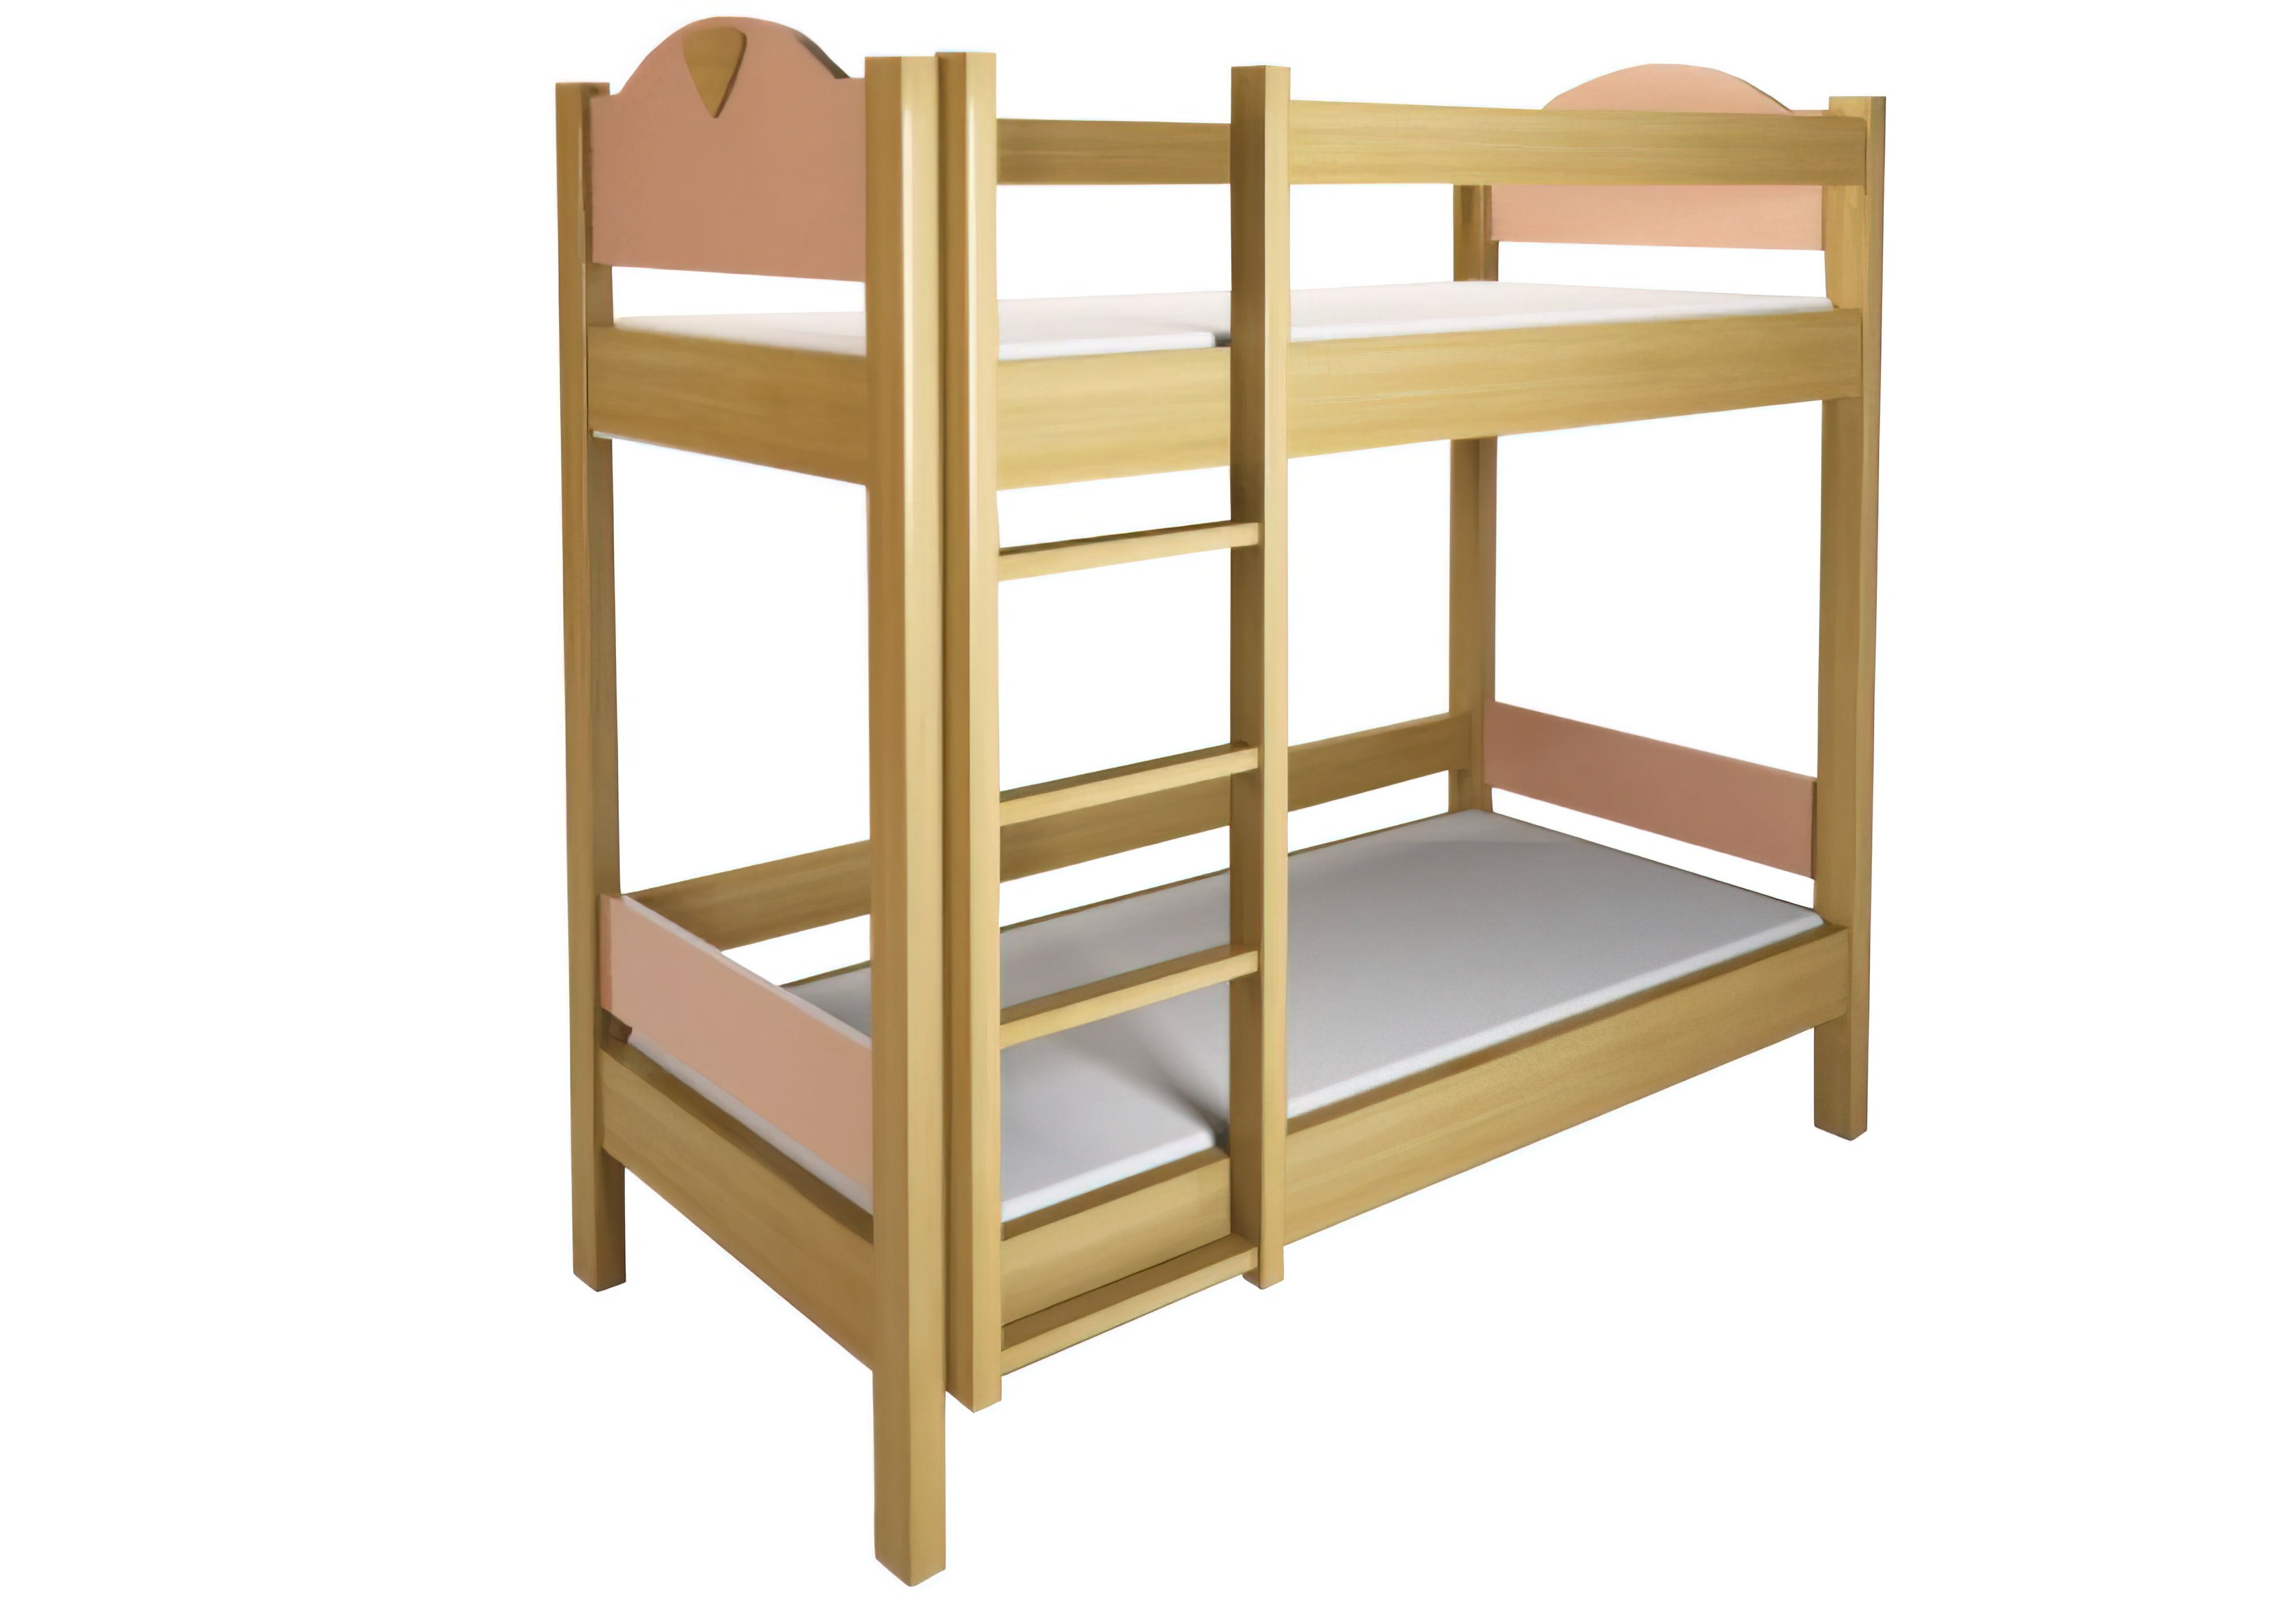  Купить Детские кровати Двухъярусная кровать "Эльф" Энран